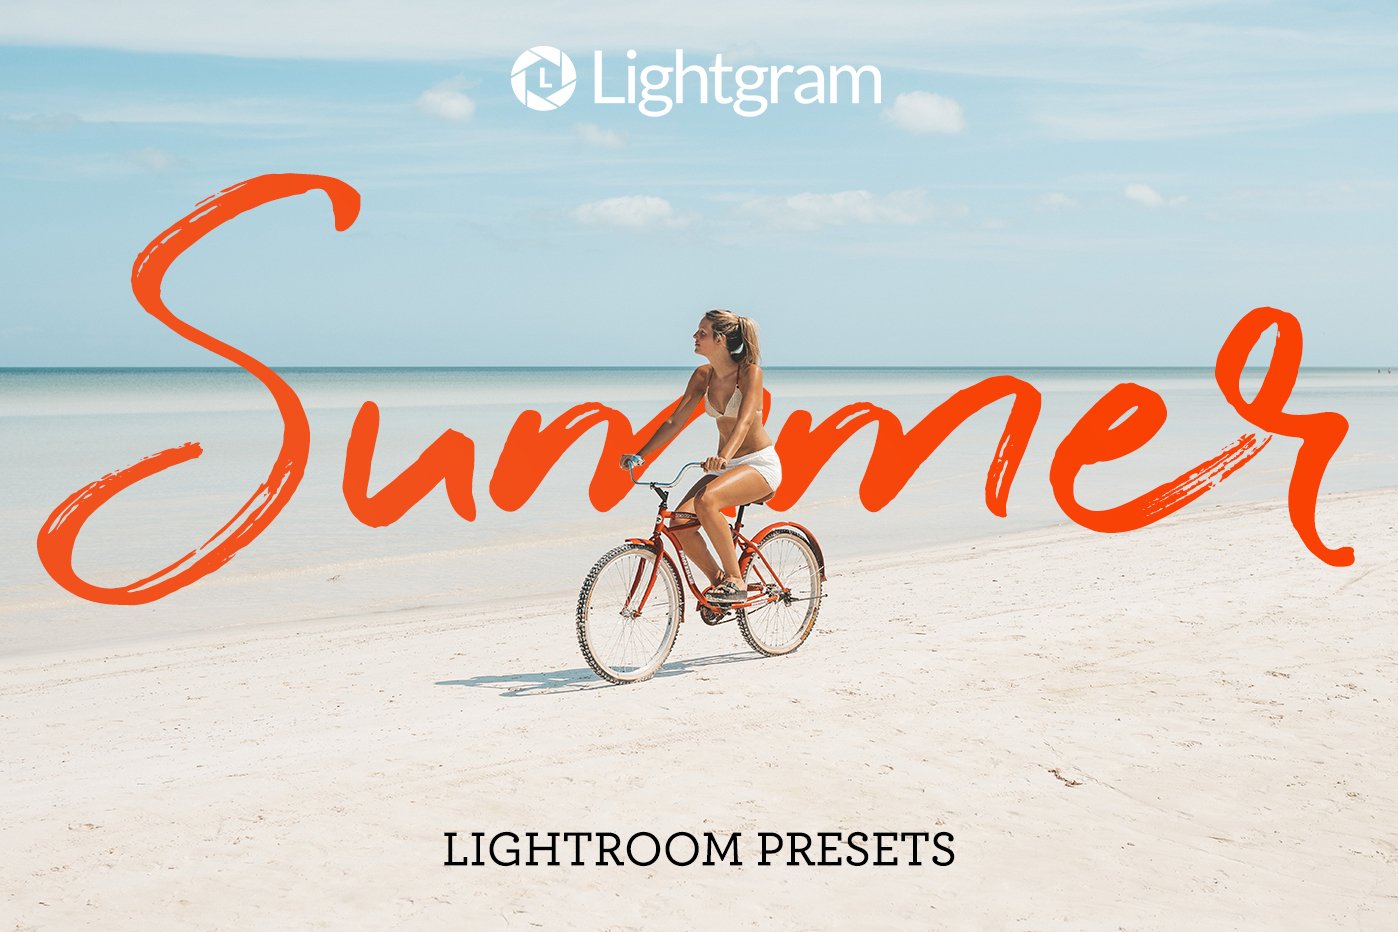 30 Summer Lightroom Presetscover image.